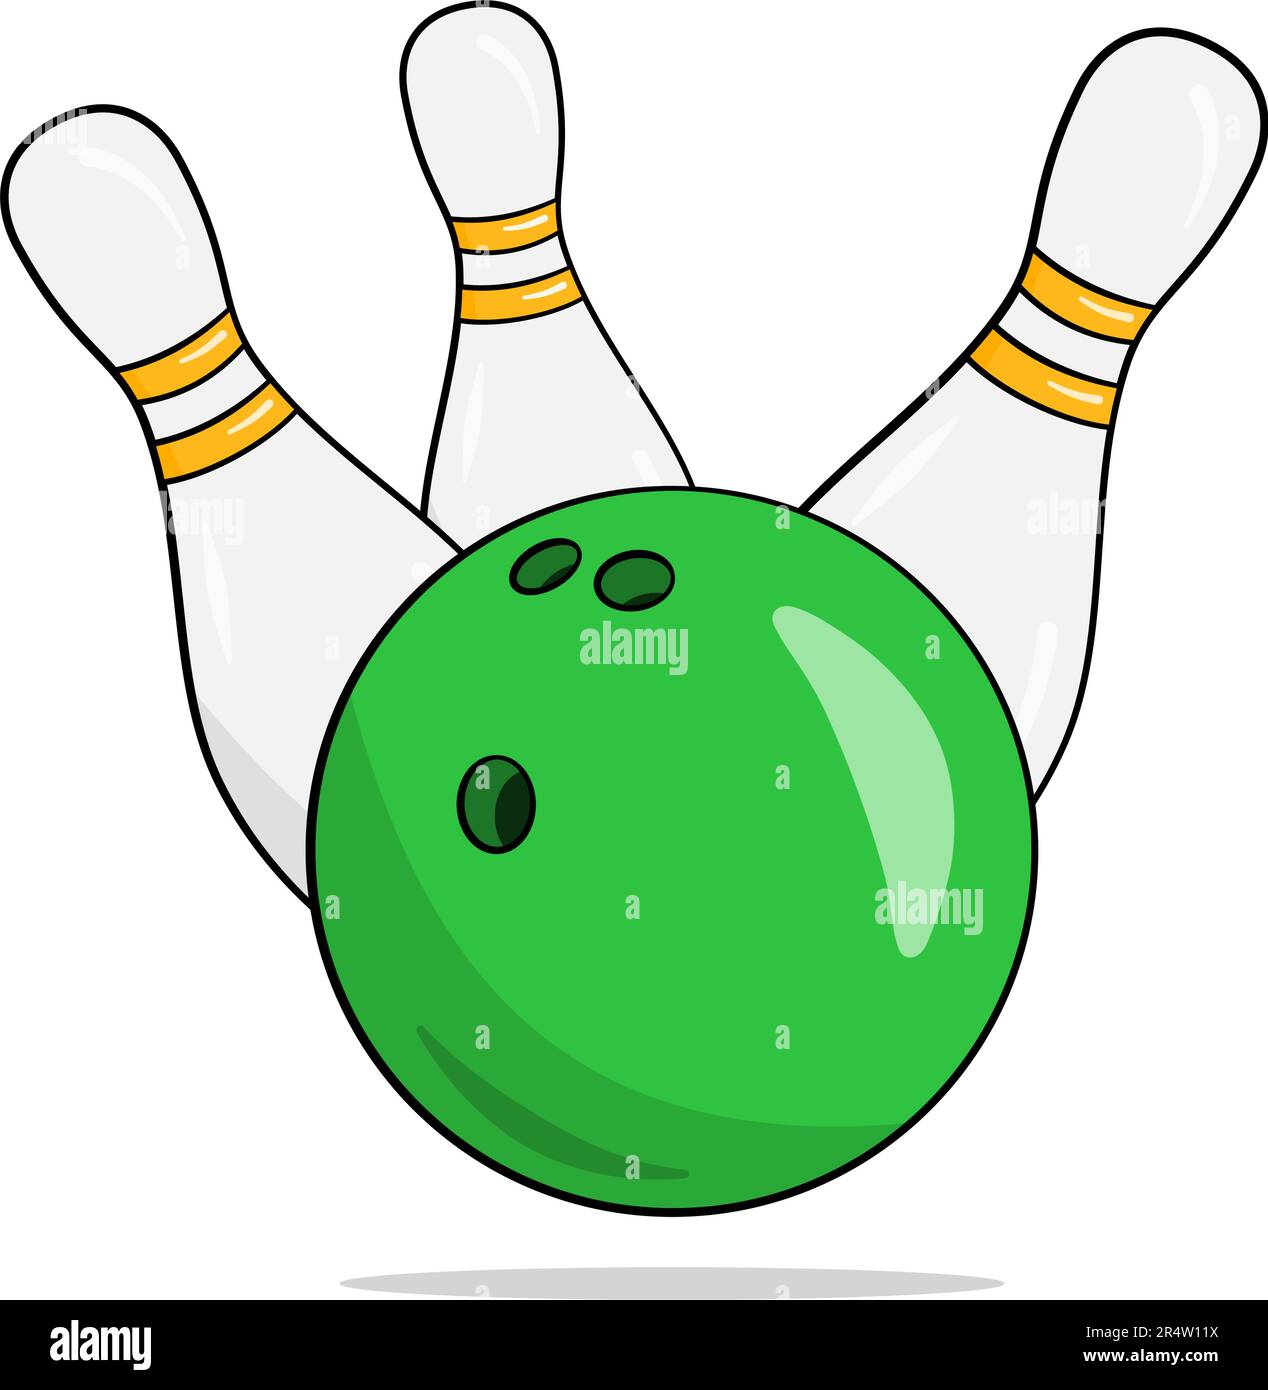 Boule de bowling verte et trois épingles. Dessin animé. Illustration vectorielle. Isolé sur fond blanc Illustration de Vecteur